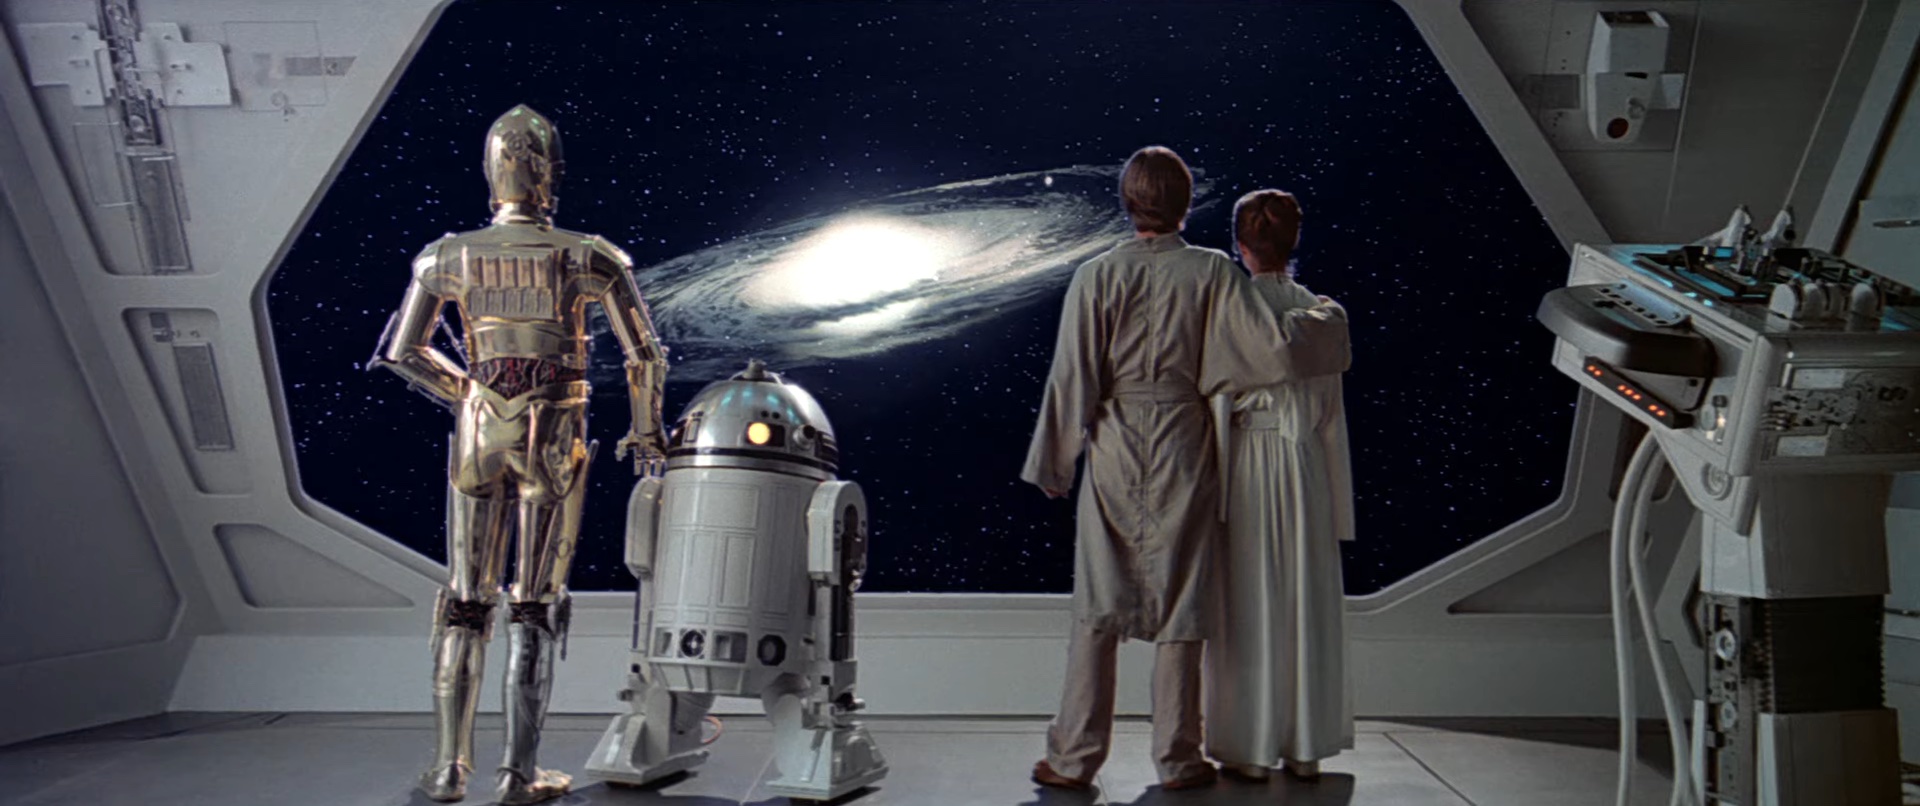 C-3PO, R2-D2, Luke e Leia olhando para o espaço em "Star Wars: O Império Contra-Ataca".